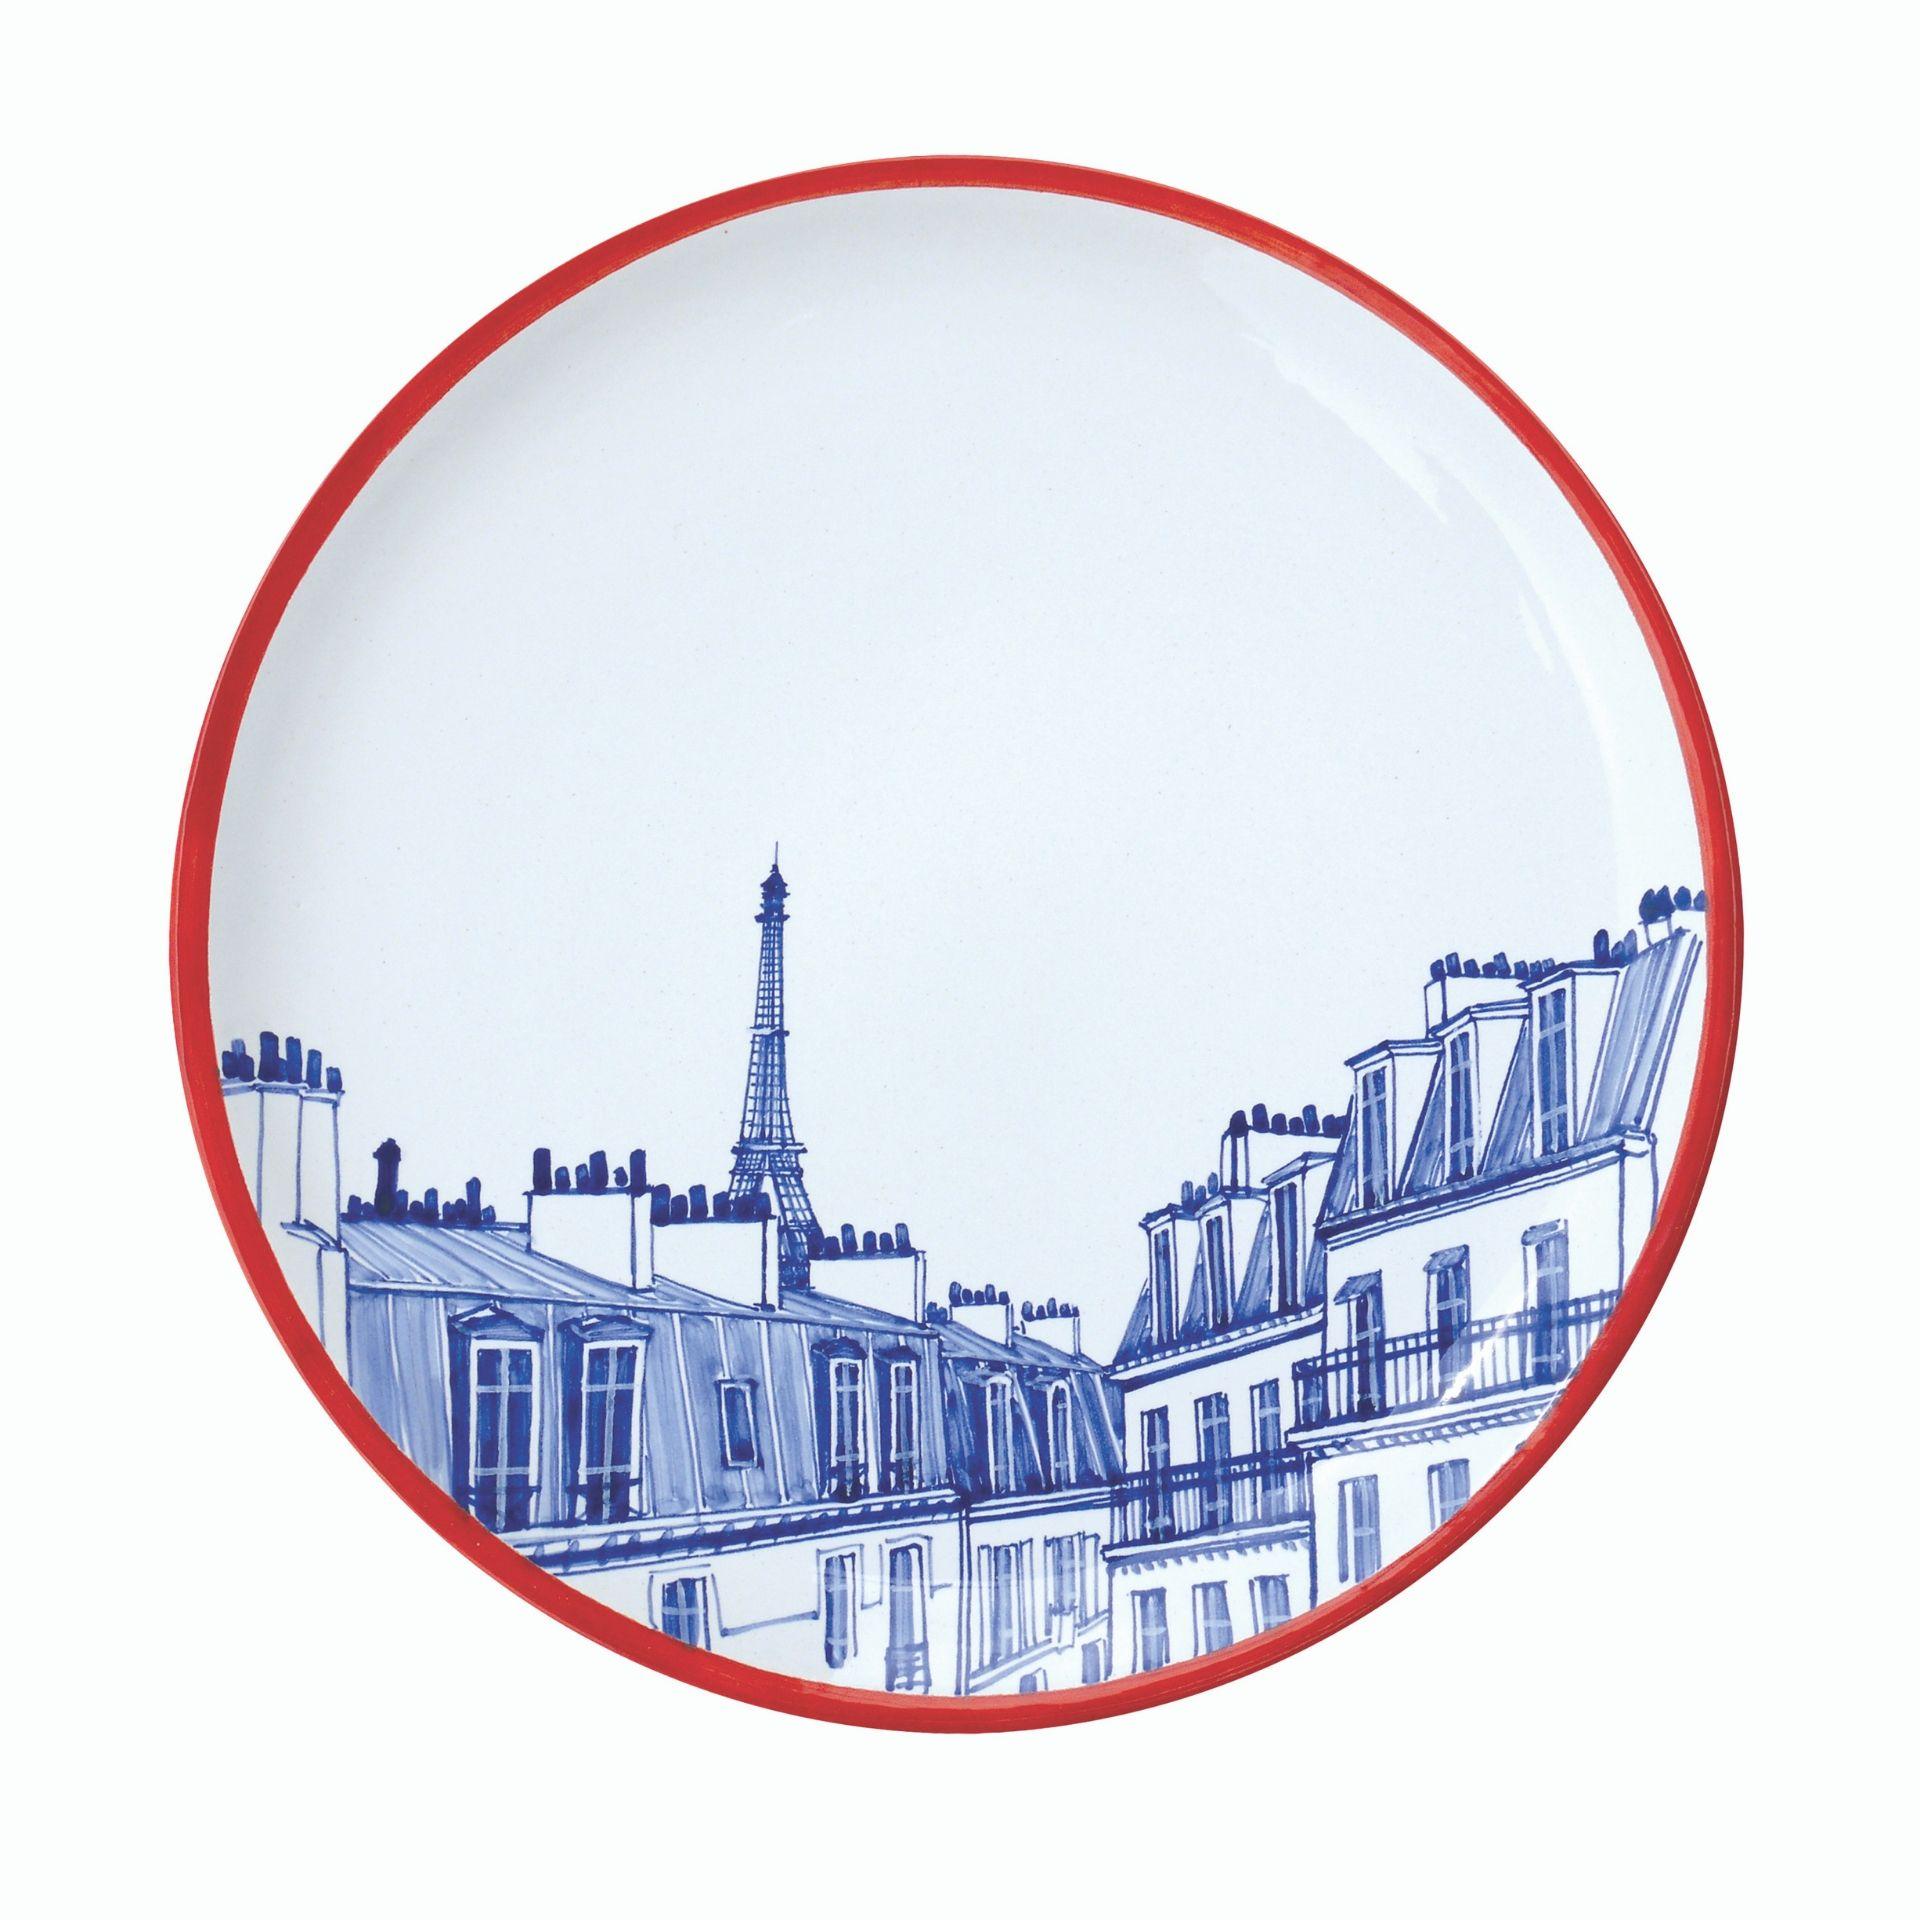 Ensemble de 4 assiettes en céramique peintes individuellement à la main. Chacune d'entre elles met en scène un site parisien différent : la tour Eiffel, Montmartre, Bastille ou le Moulin Rouge. Chaque pièce est peinte à main levée. La combinaison de